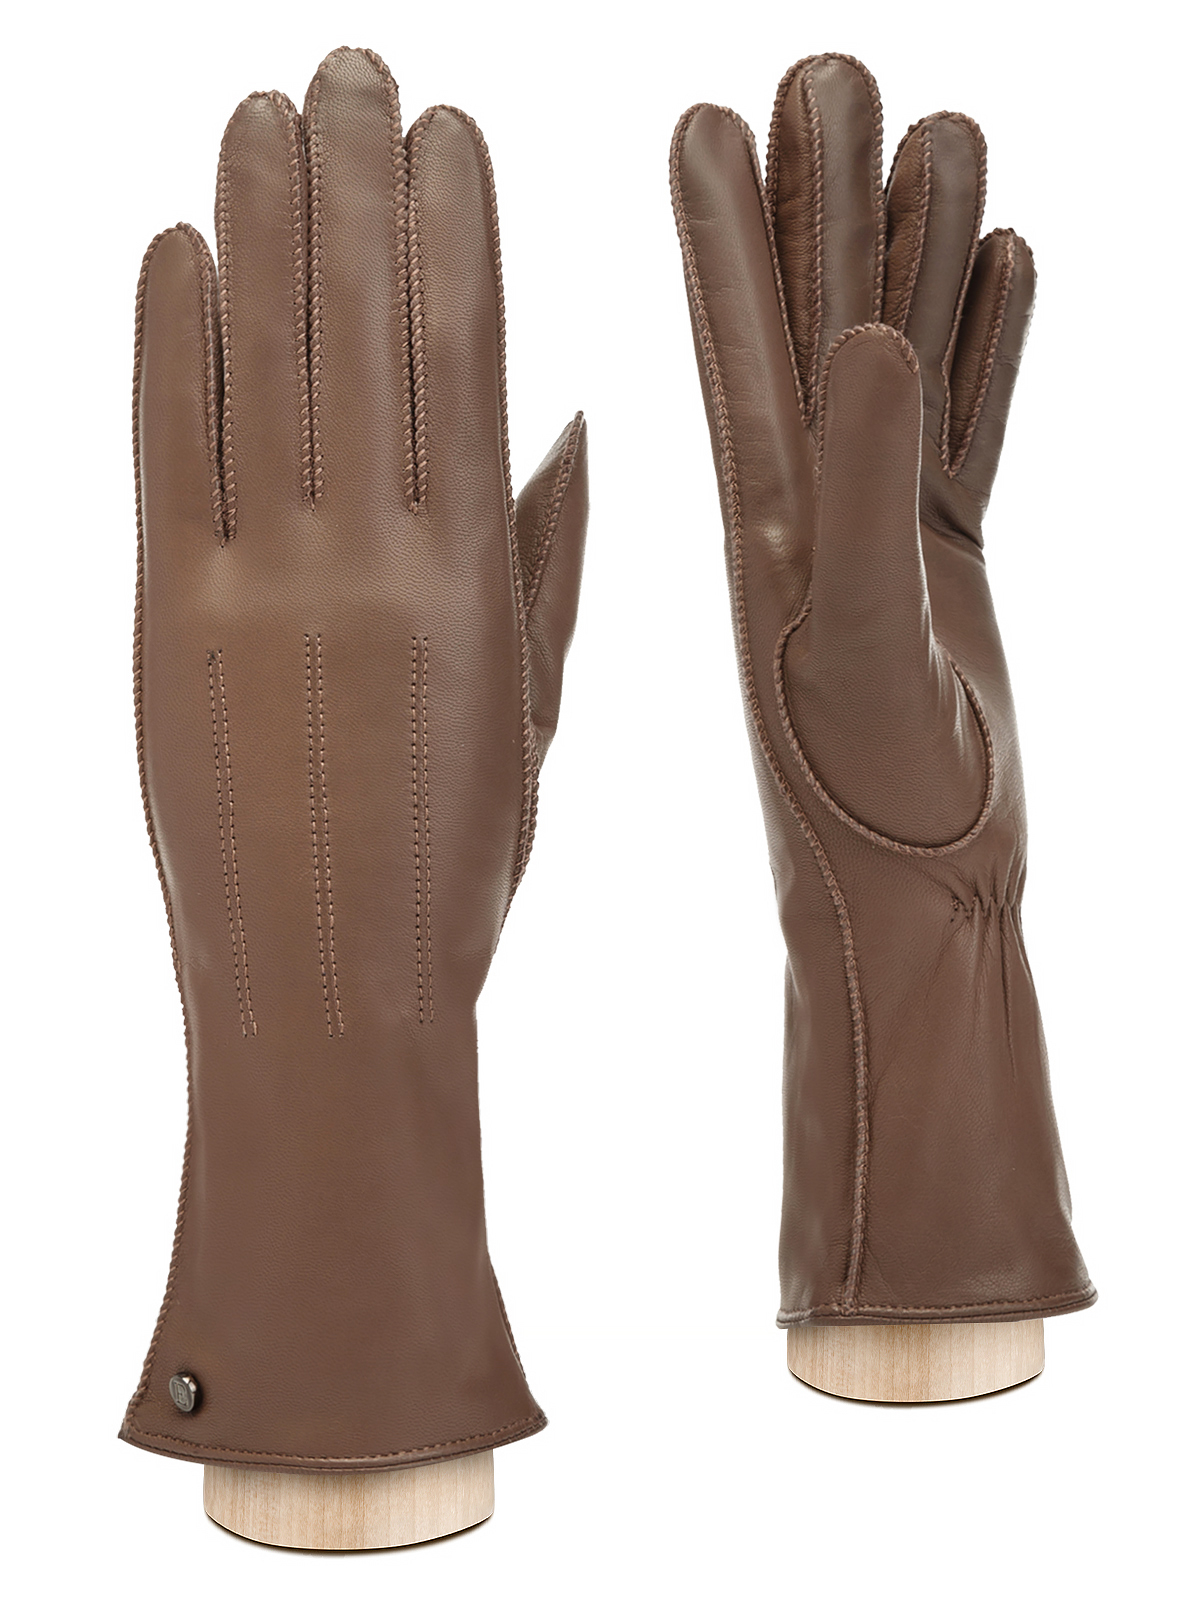 Перчатки женские Eleganzza OS01225 светло-коричневые р. 6,5